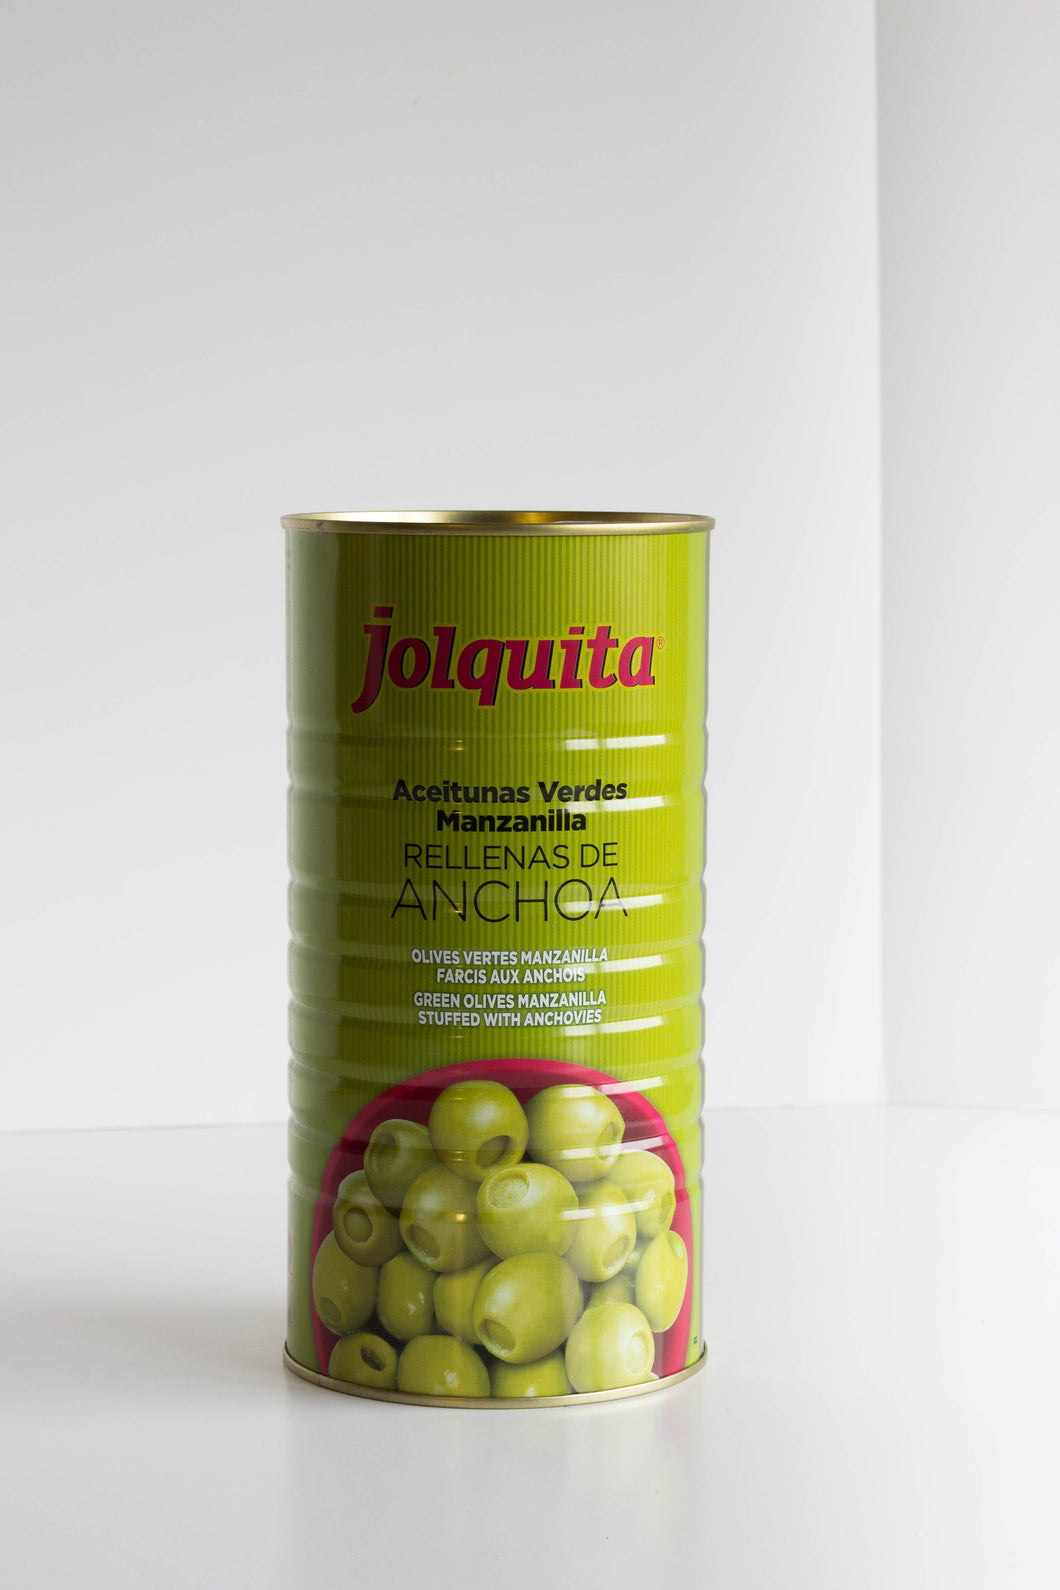 JOLQUITA - Olives vertes Manzanilla farcis aux anchois (600g) - Les produits du soleil